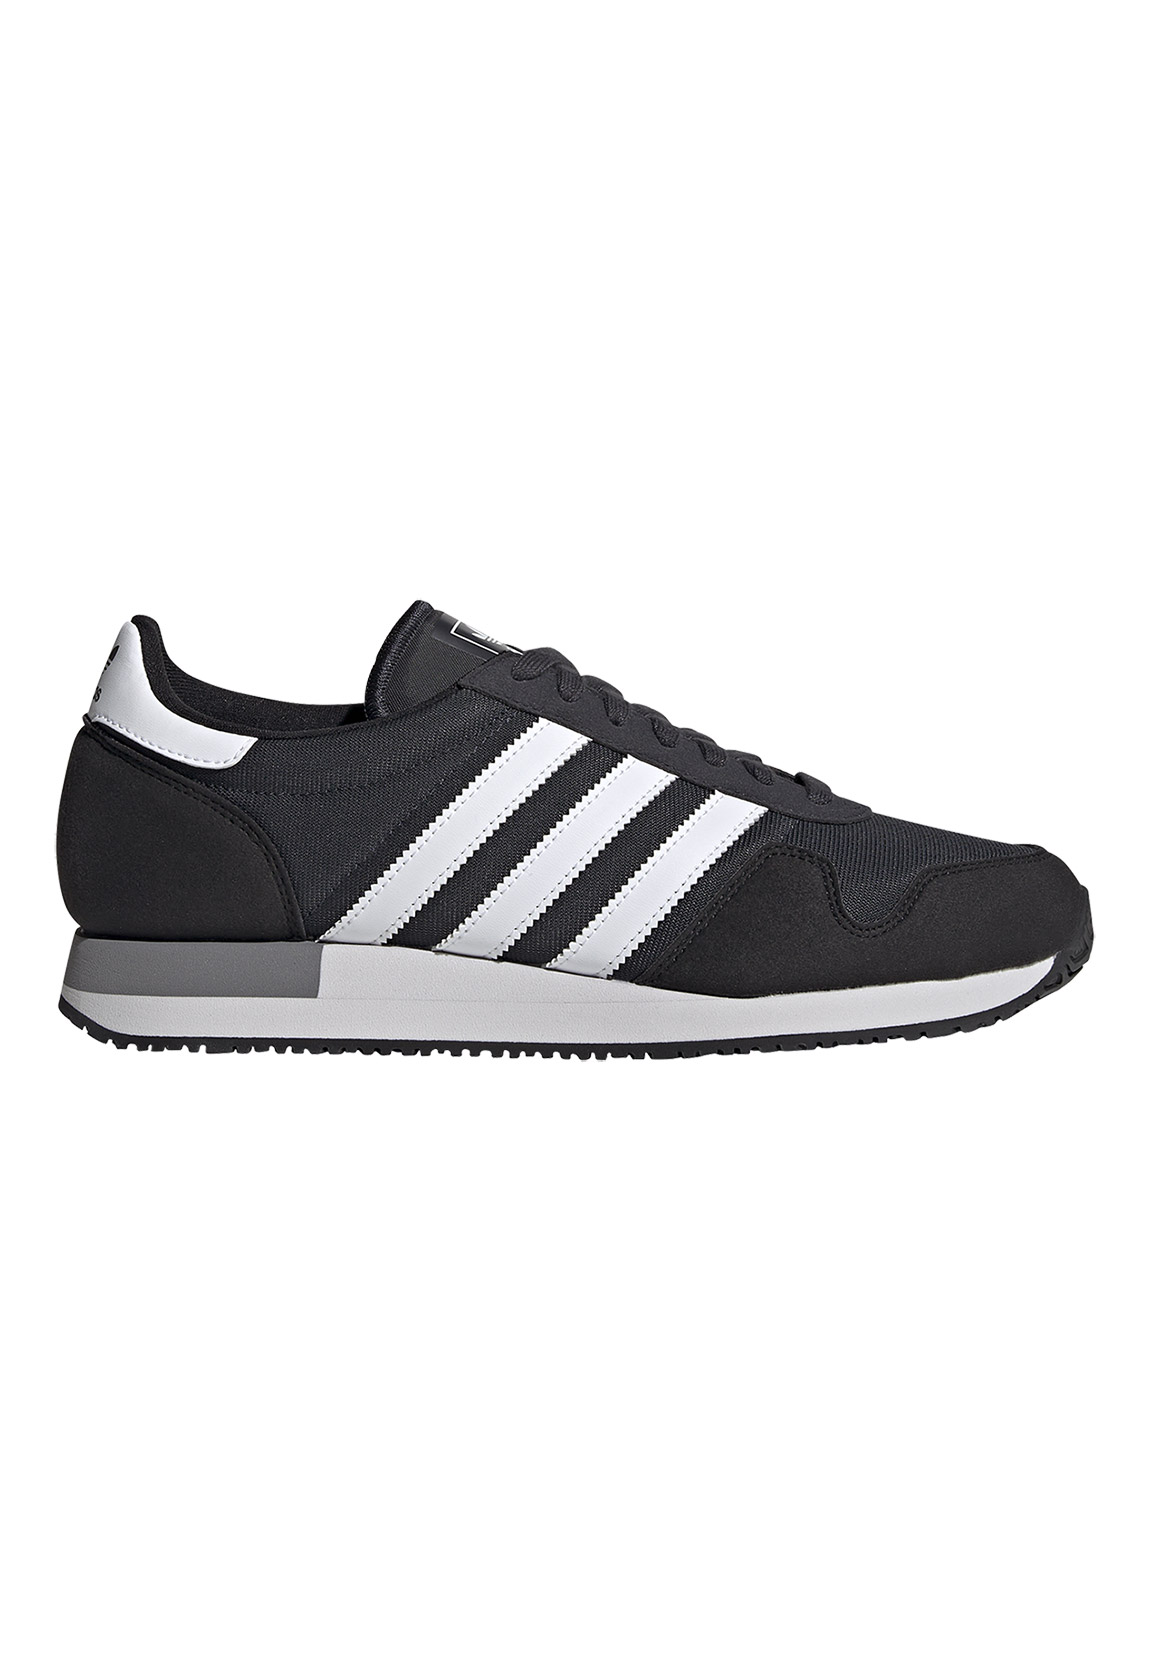 Adidas Originals Usa 84 Sportschuhe EU 42 2/3 Core Black / Crystal White / günstig online kaufen